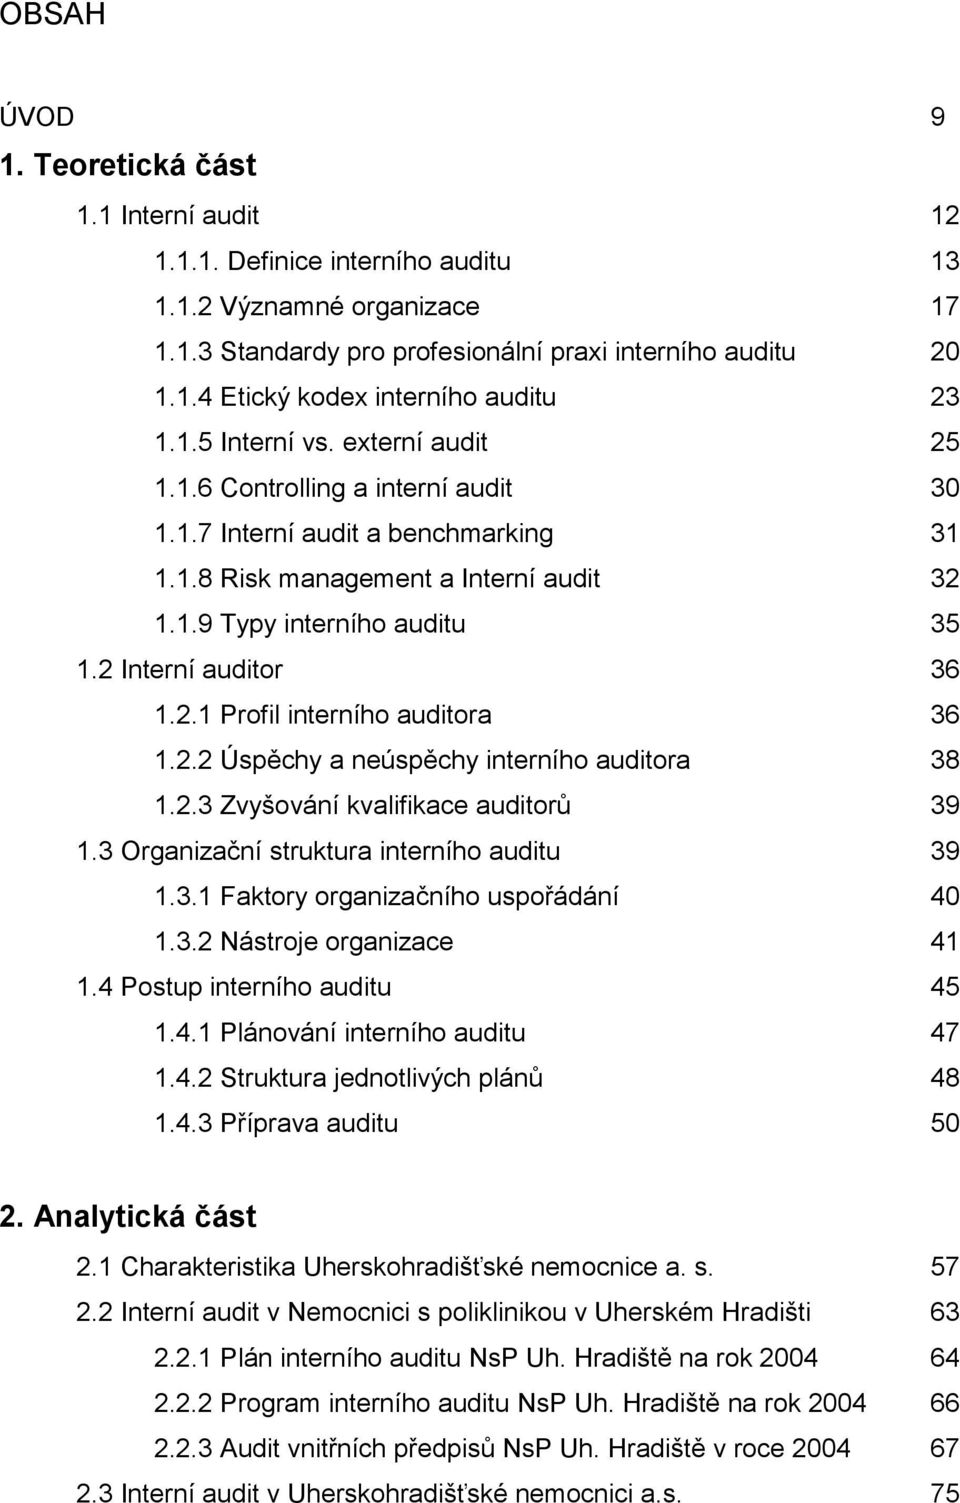 2 Interní auditor 36 1.2.1 Profil interního auditora 36 1.2.2 Úspěchy a neúspěchy interního auditora 38 1.2.3 Zvyšování kvalifikace auditorů 39 1.3 Organizační struktura interního auditu 39 1.3.1 Faktory organizačního uspořádání 40 1.